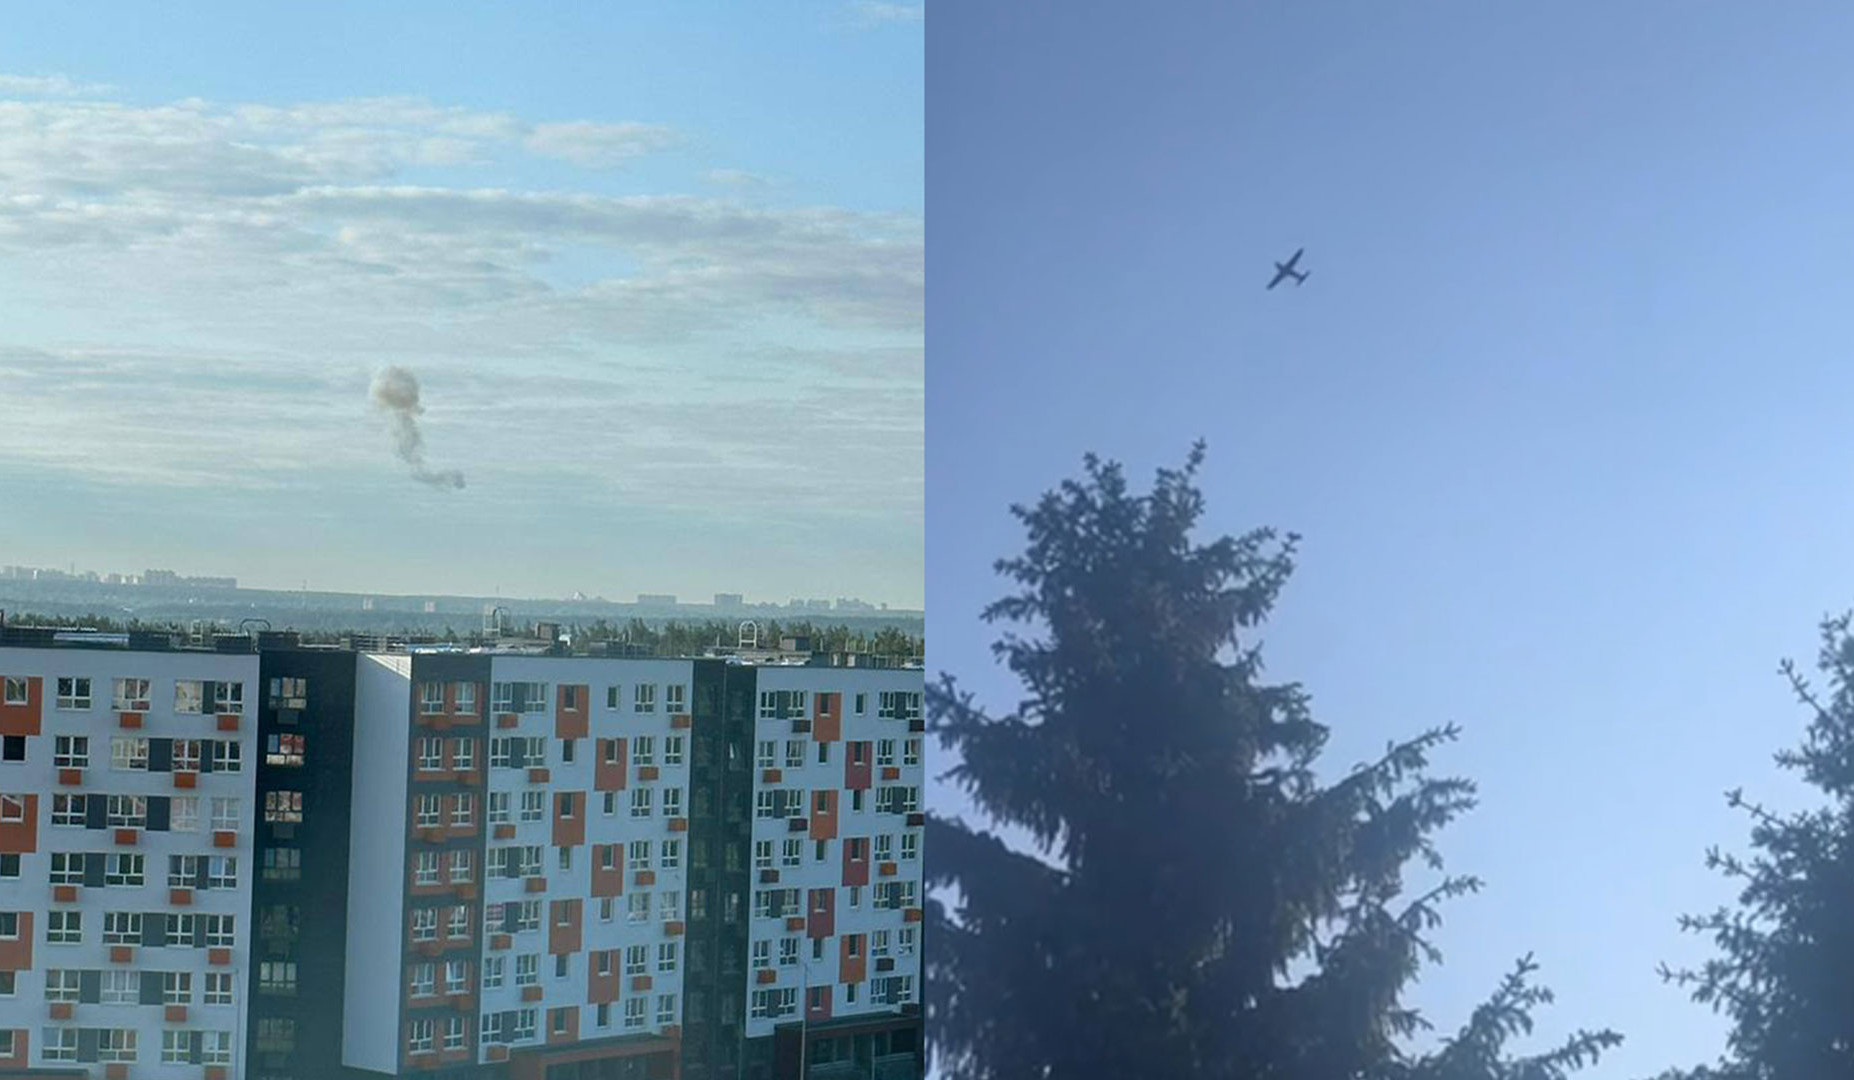 ՌԴ ՊՆ-ն հայտնել է անօդաչու թռչող սարքով Մոսկվայի և Մոսկվայի մարզի վրա Կիևի հարձակումը կանխելու մասին